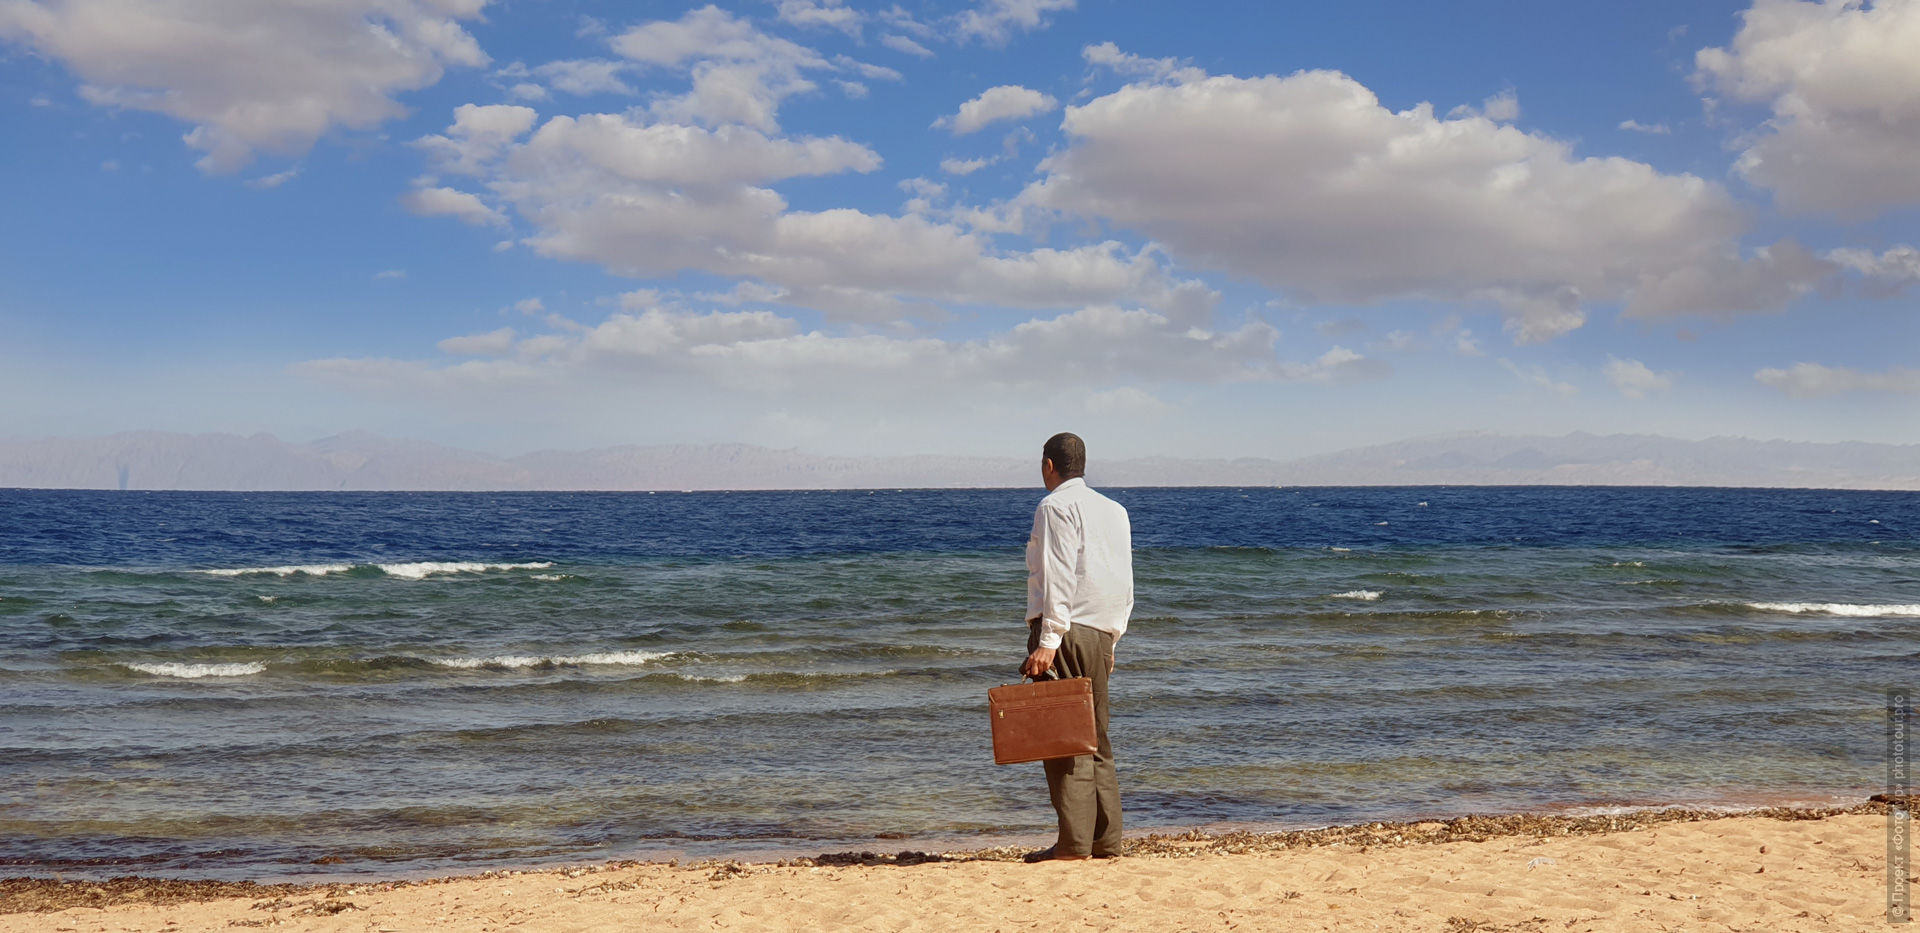 Дахаб, Красное Море. Акварельный фототур по Синаю: Красное Море и Цветные Горы,  12 ноября - 19 ноября 2022 года.